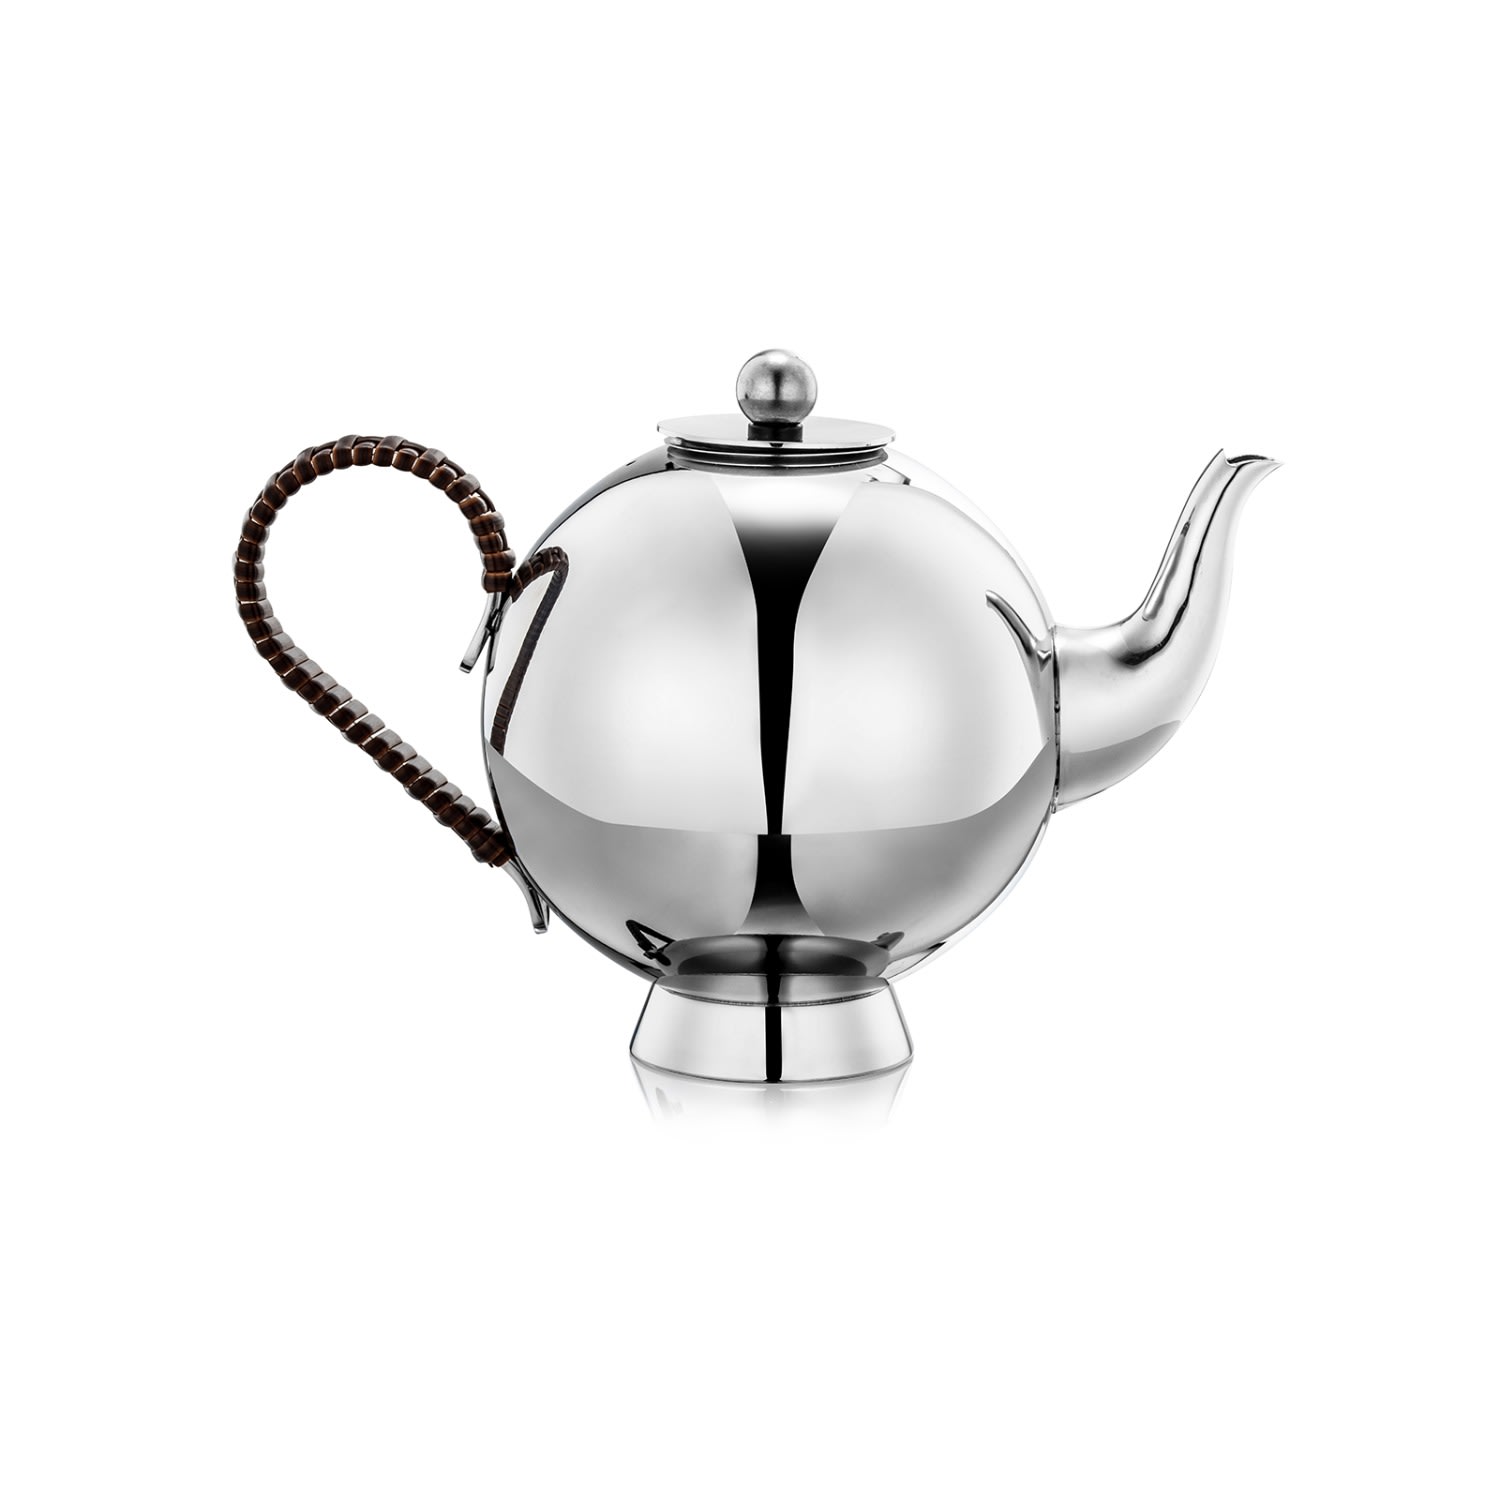 Silver Spheres Tea Infuser Large Wicker Handle Nick Munro